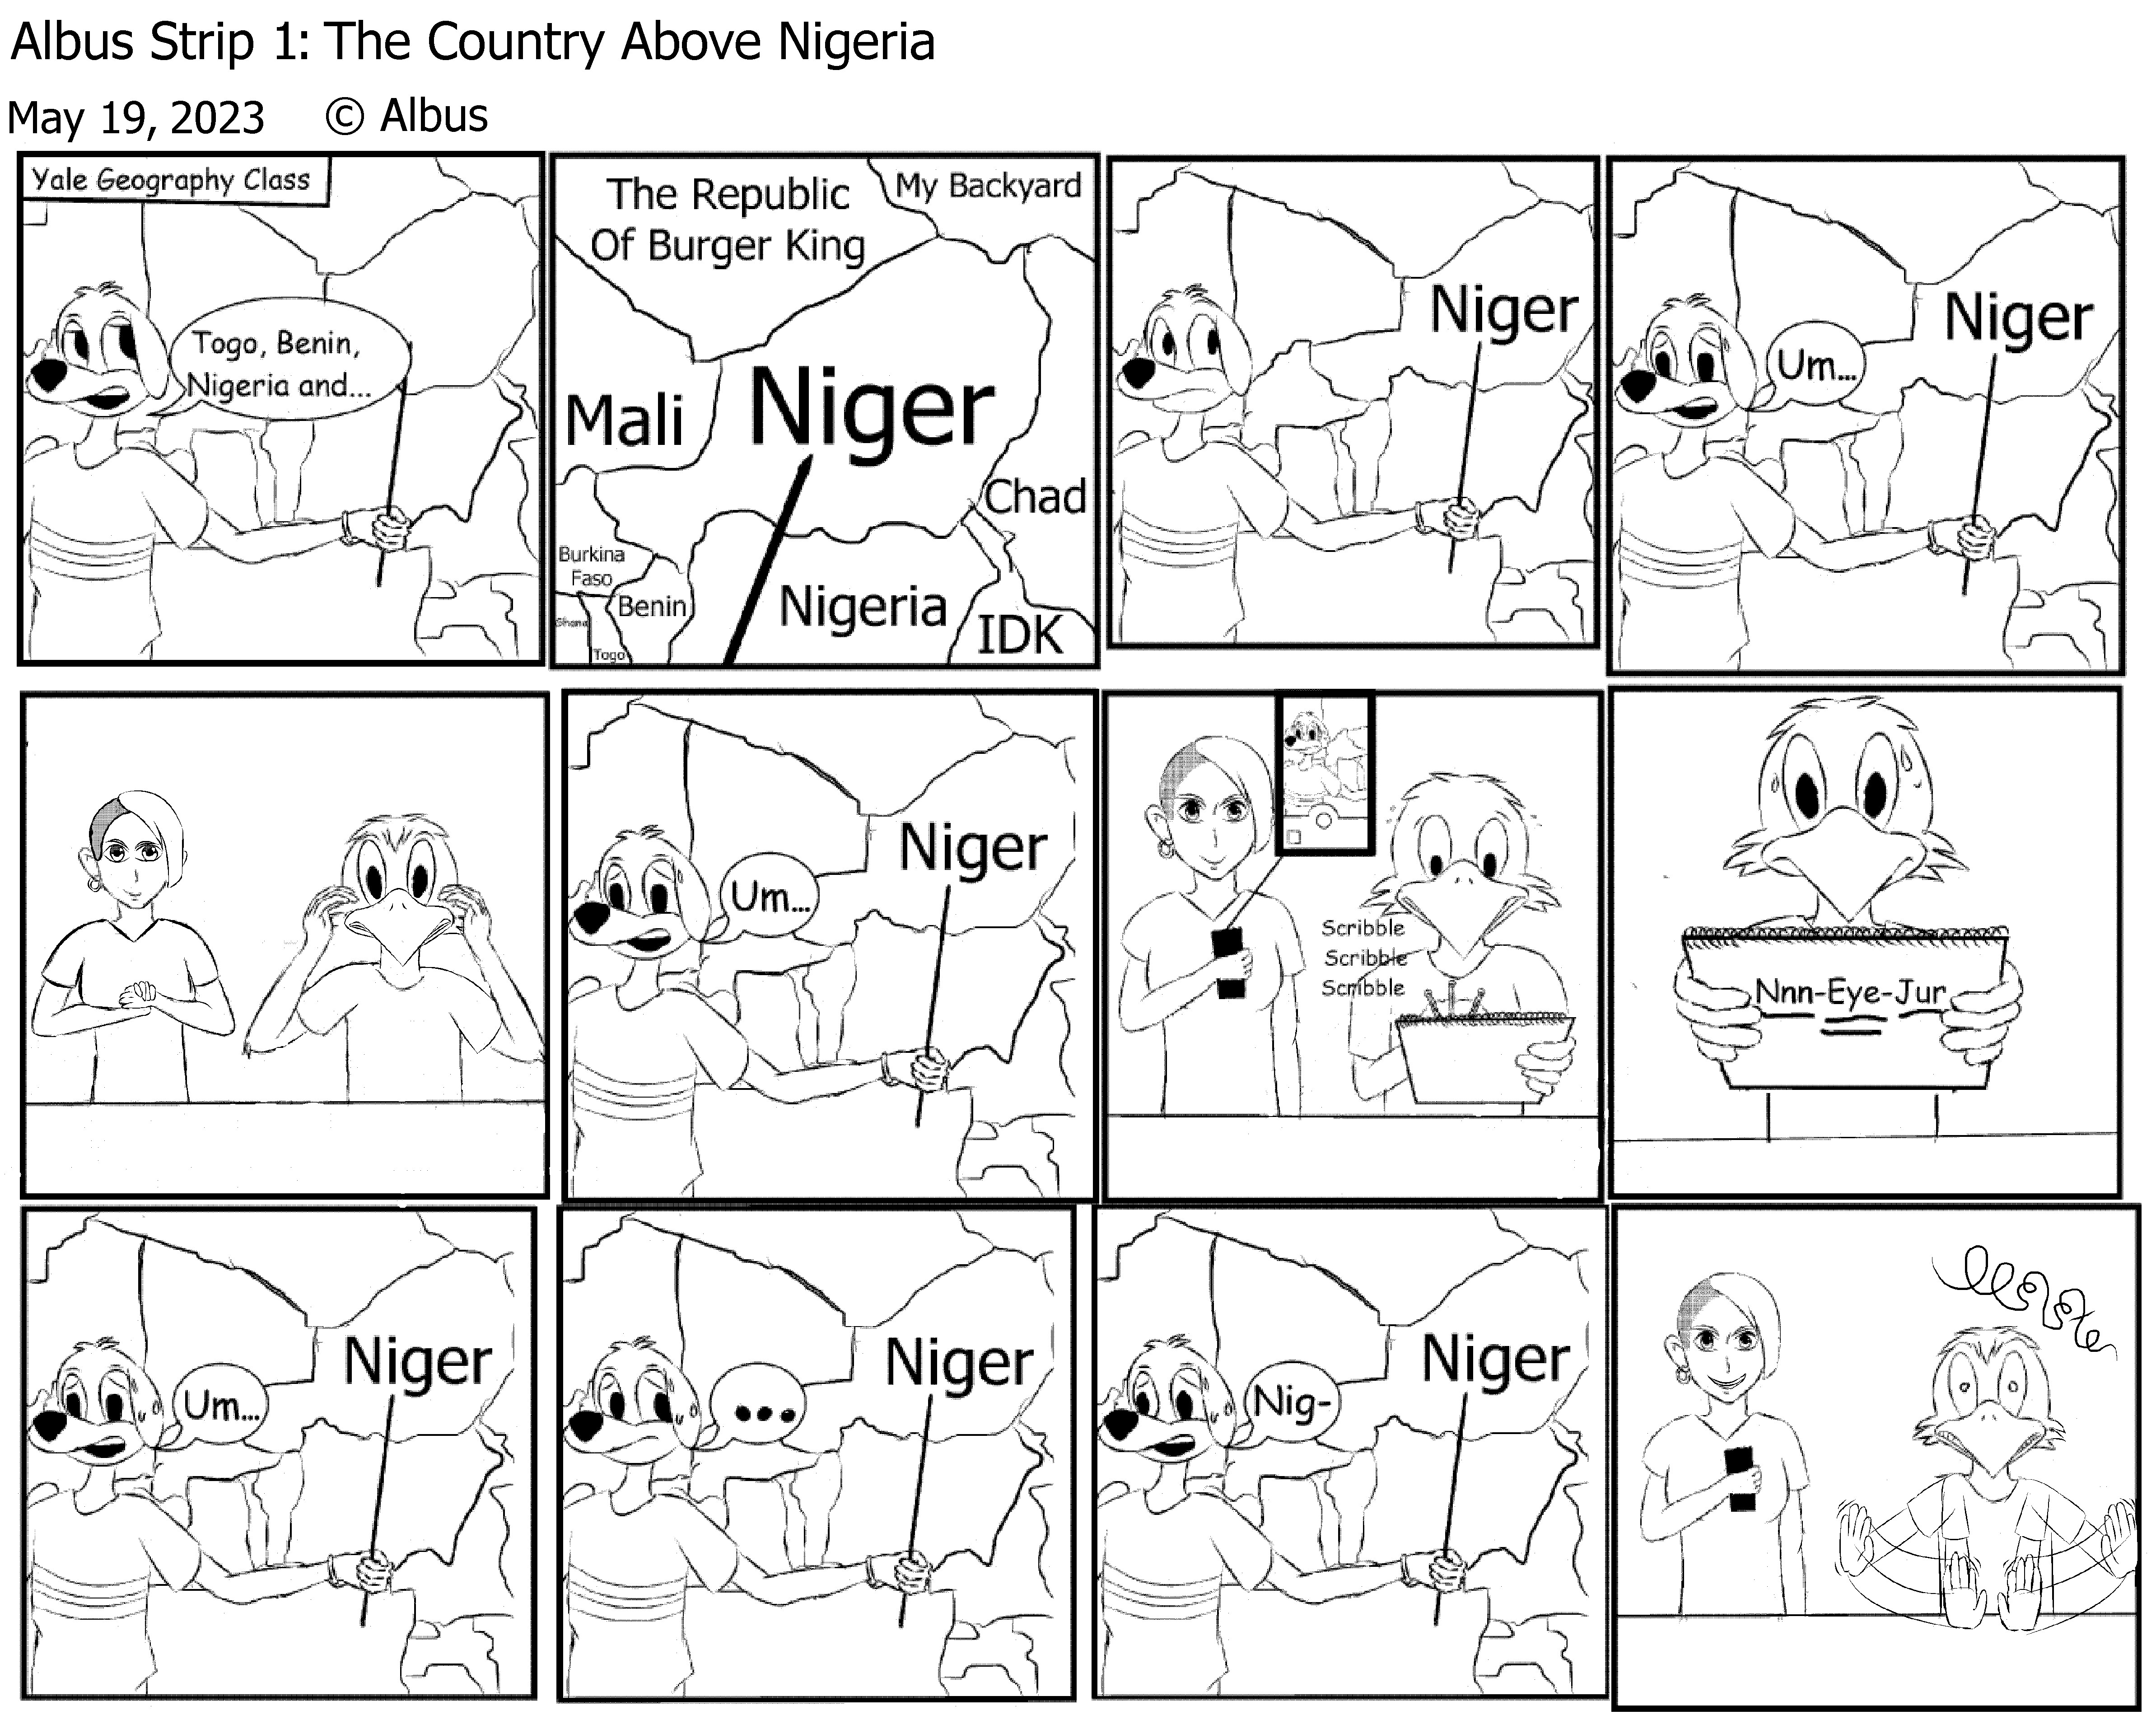 albus_strip_1__the_country_above_nigeria_by_mpmelo11_dfxiooj.jpg